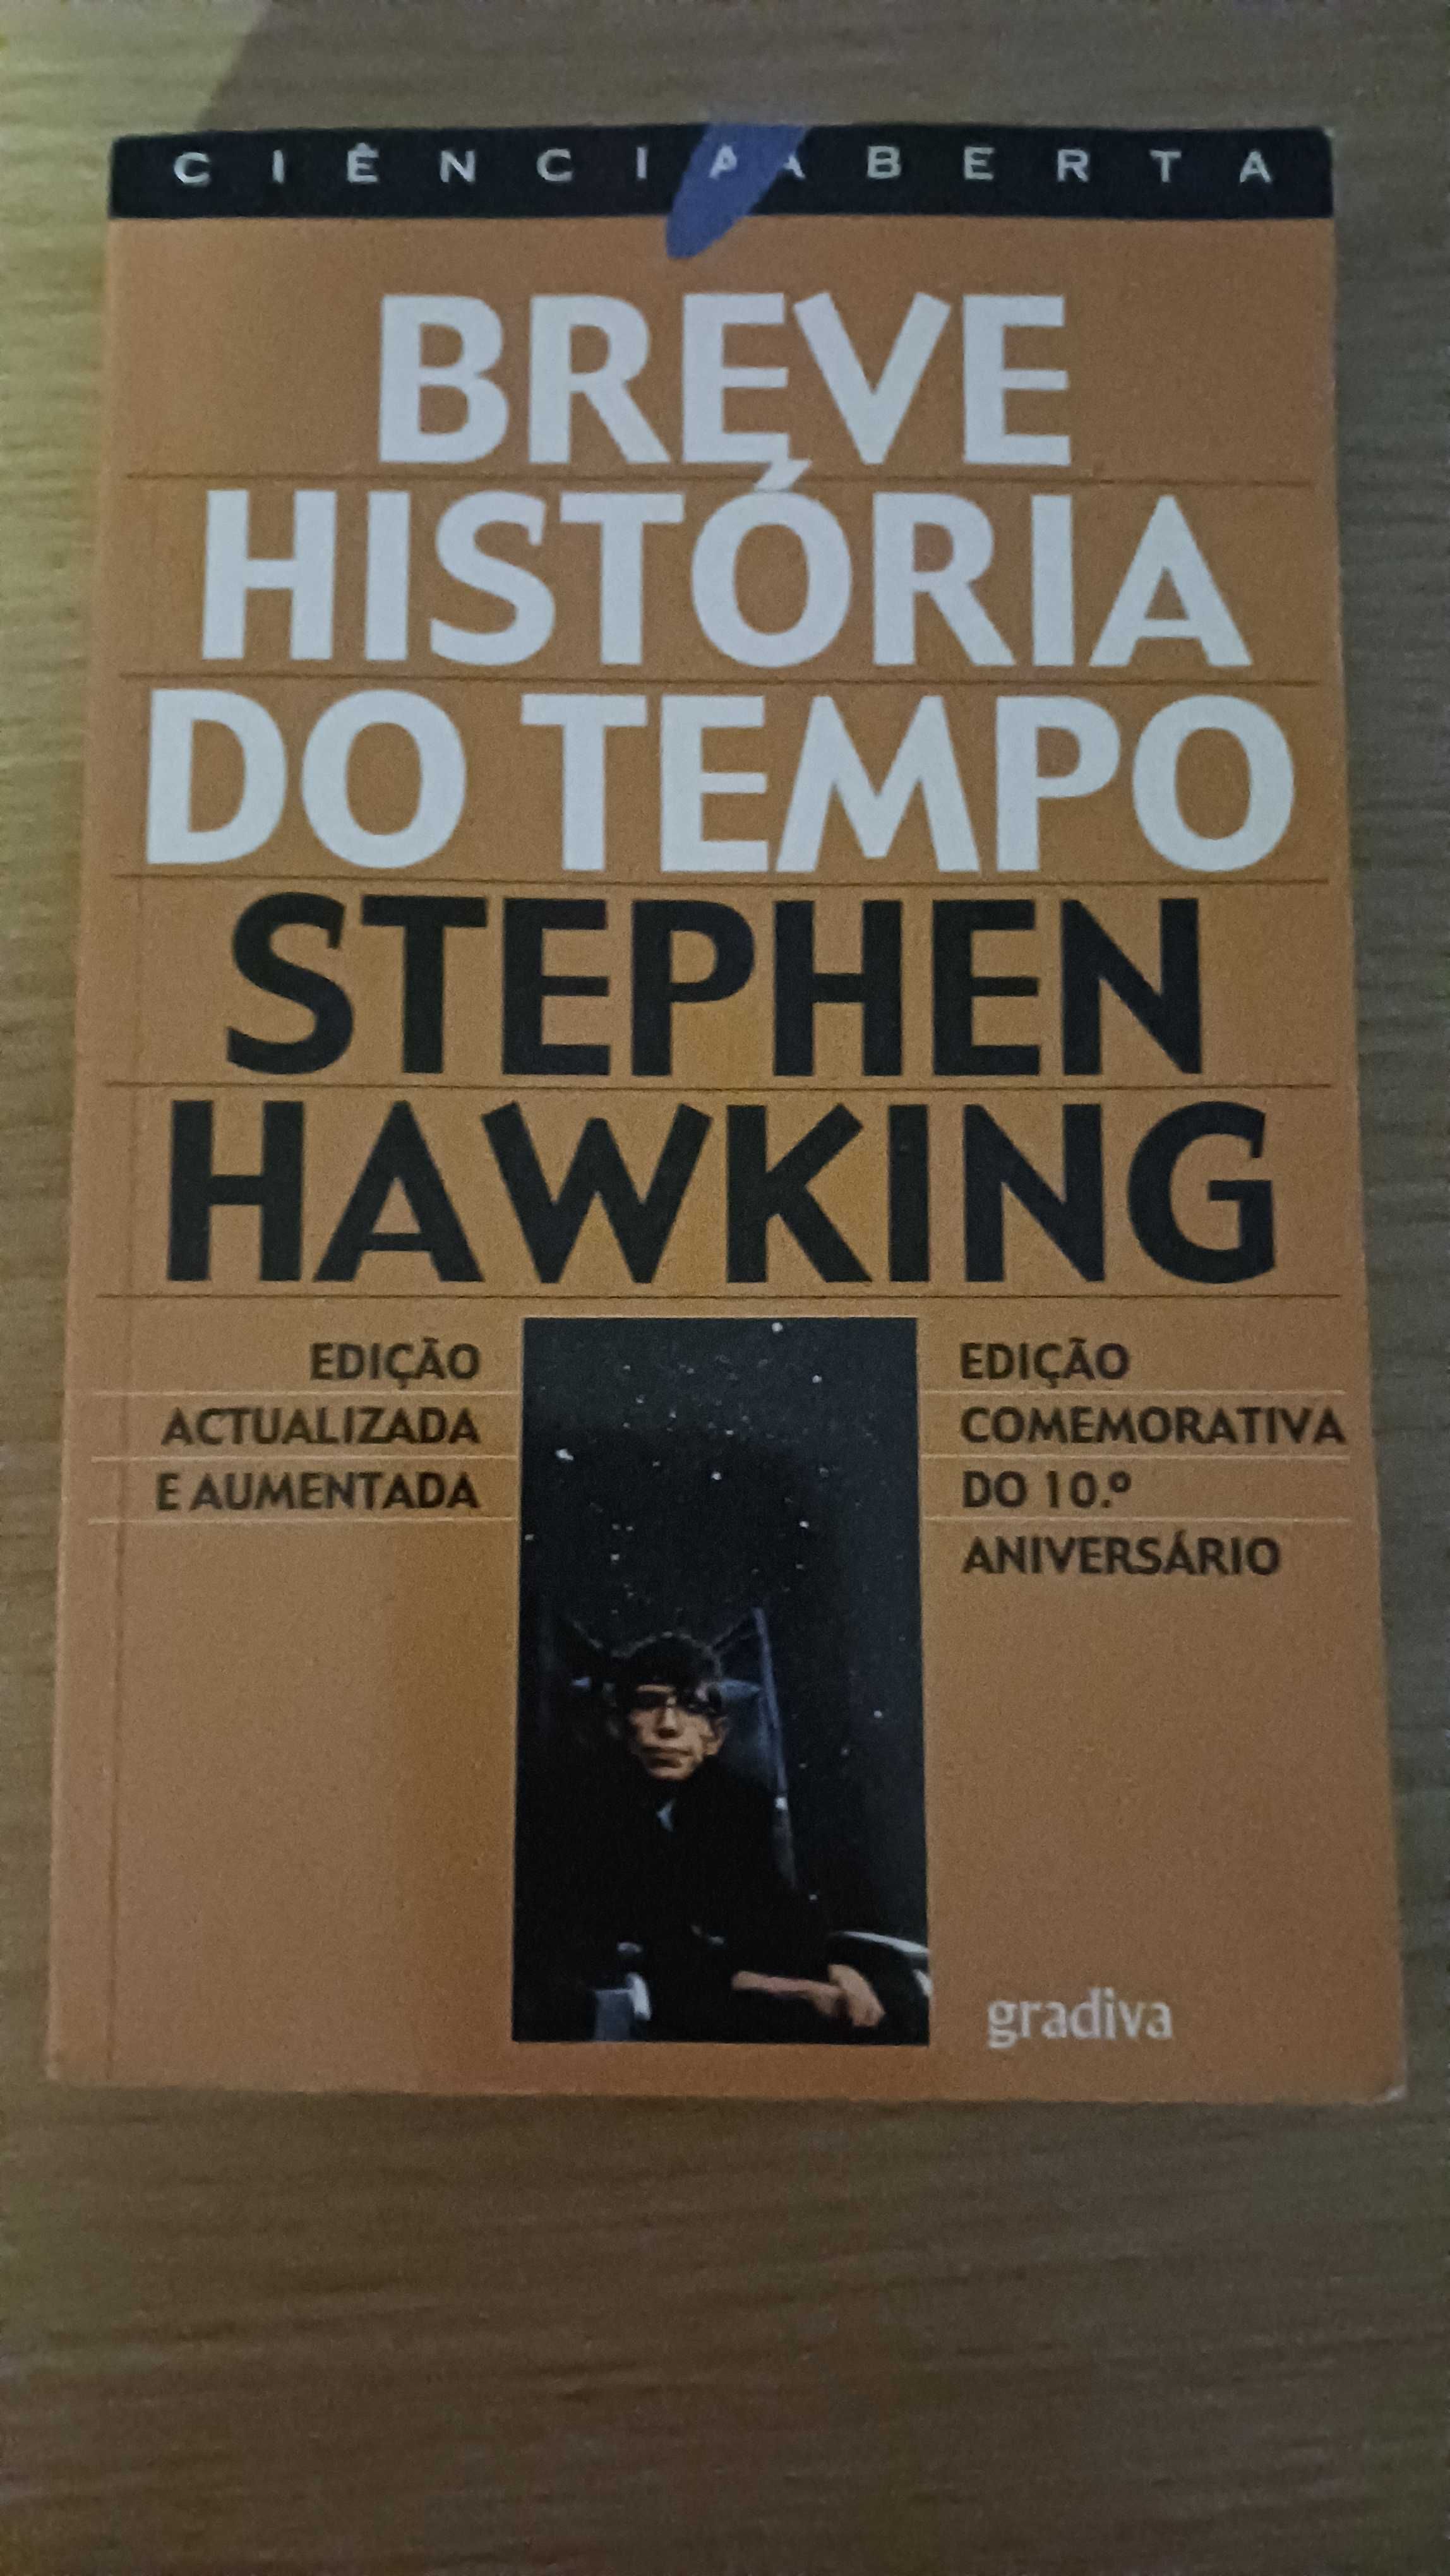 “Breve historia do tempo” de Stephen Hawking